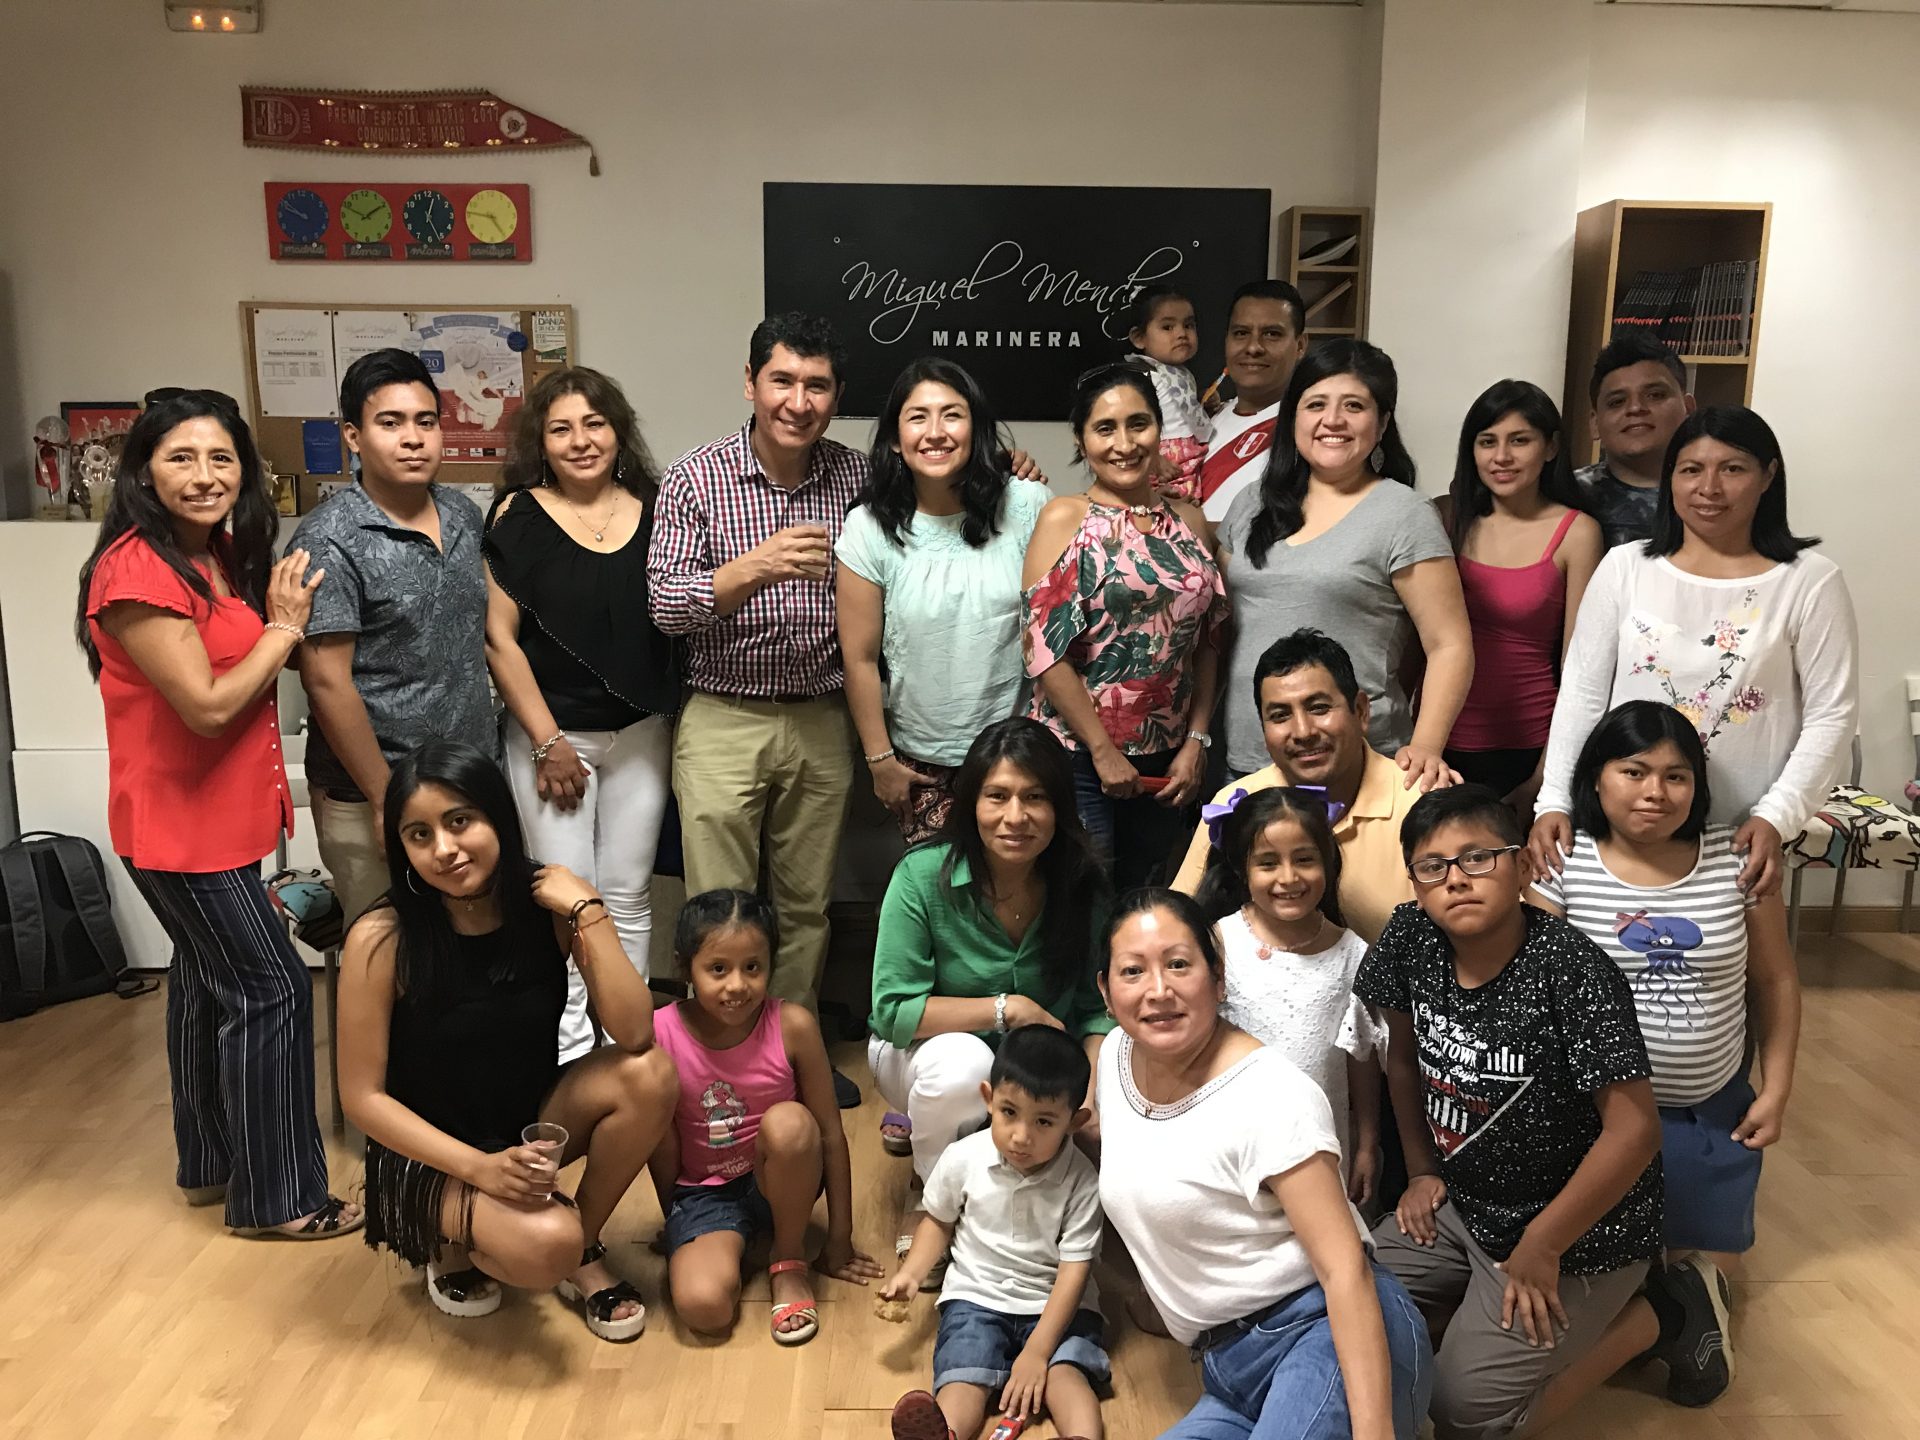 La comunidad peruana en Madrid: Descubre su cultura y gastronomía